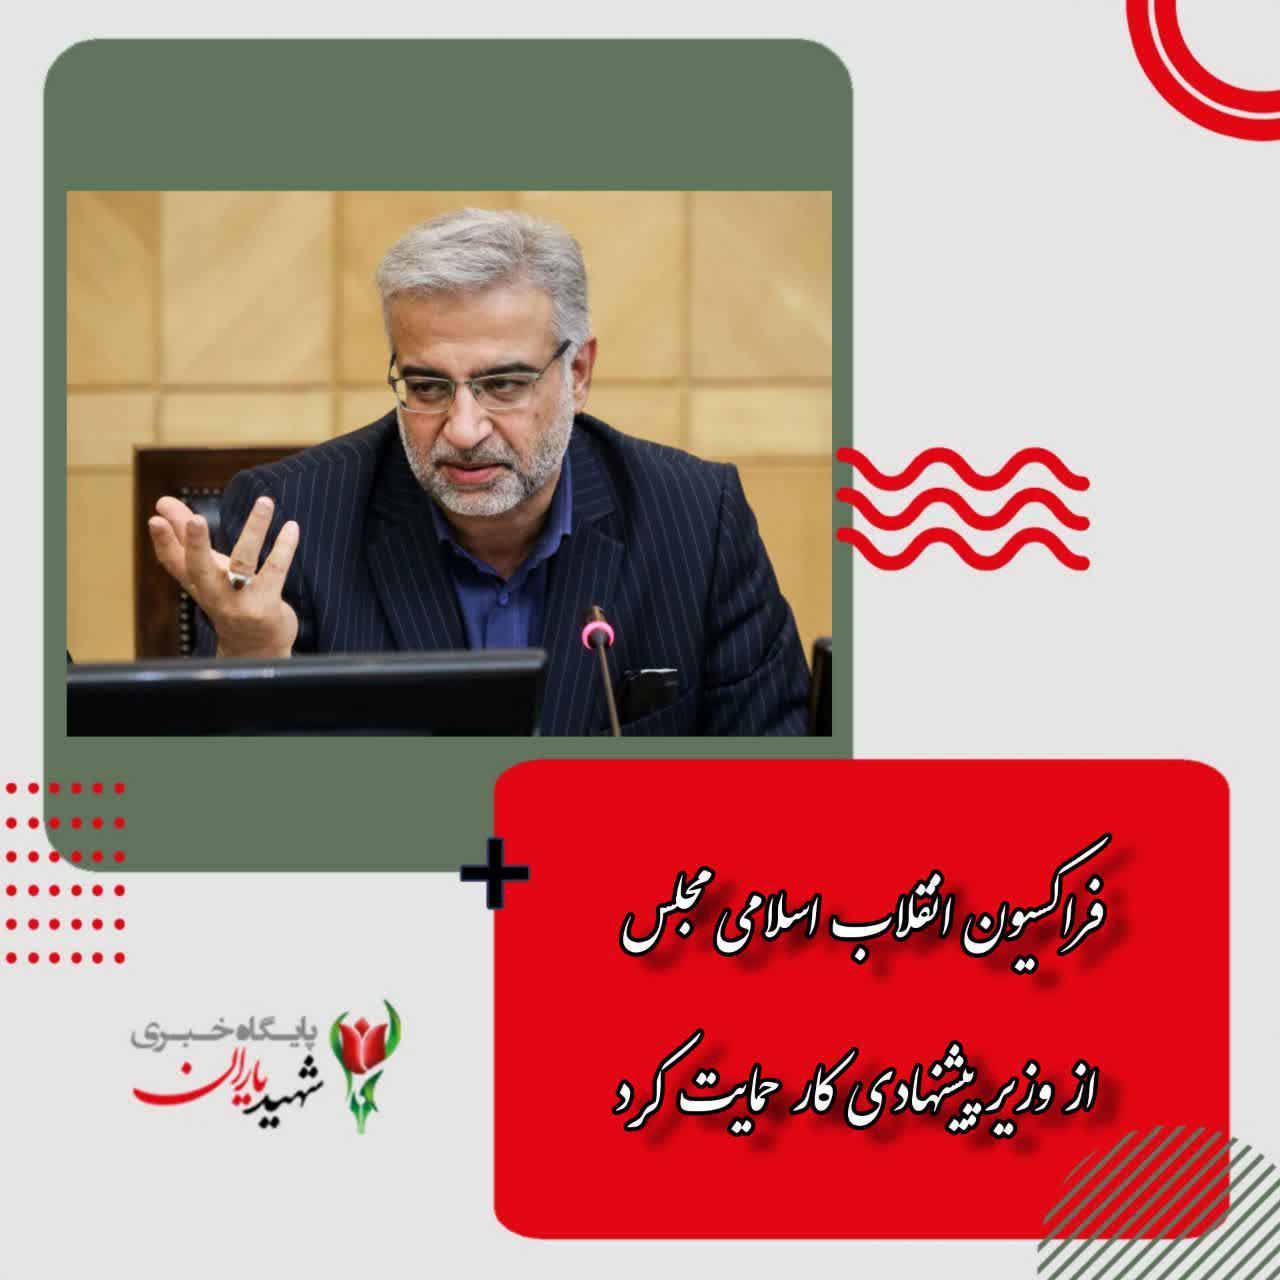 فراکسیون انقلاب اسلامی مجلس از وزیر پیشنهادی کار حمایت کرد